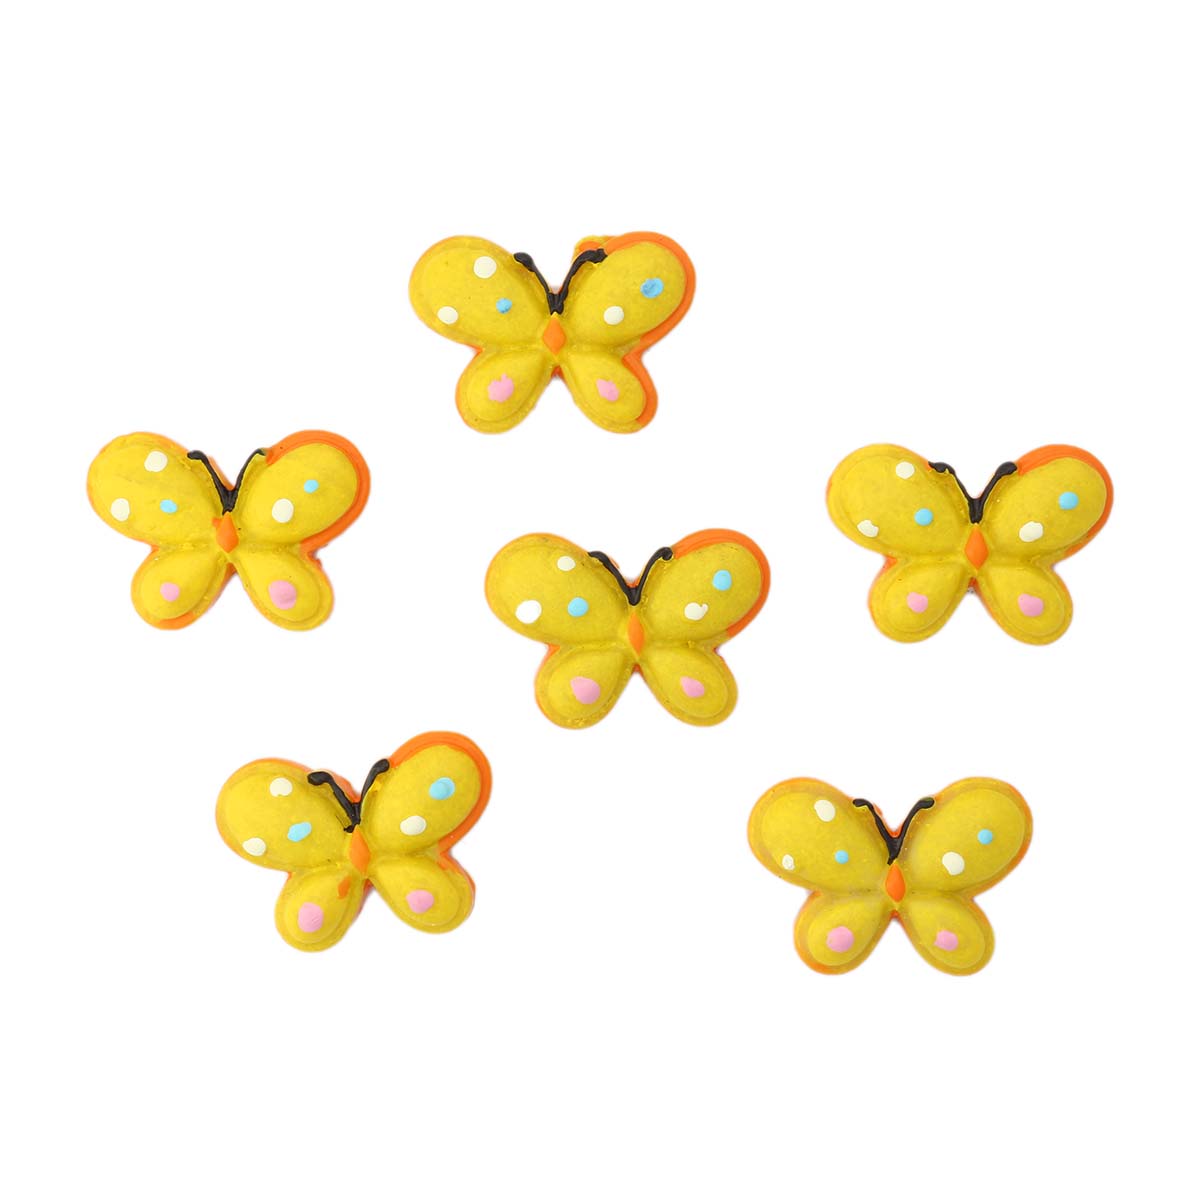 LR15-4605 Объемные фигурки 'Бабочка' (полимер), желто-оранжевая, 2,5*2 см, упак./6 шт., 'А